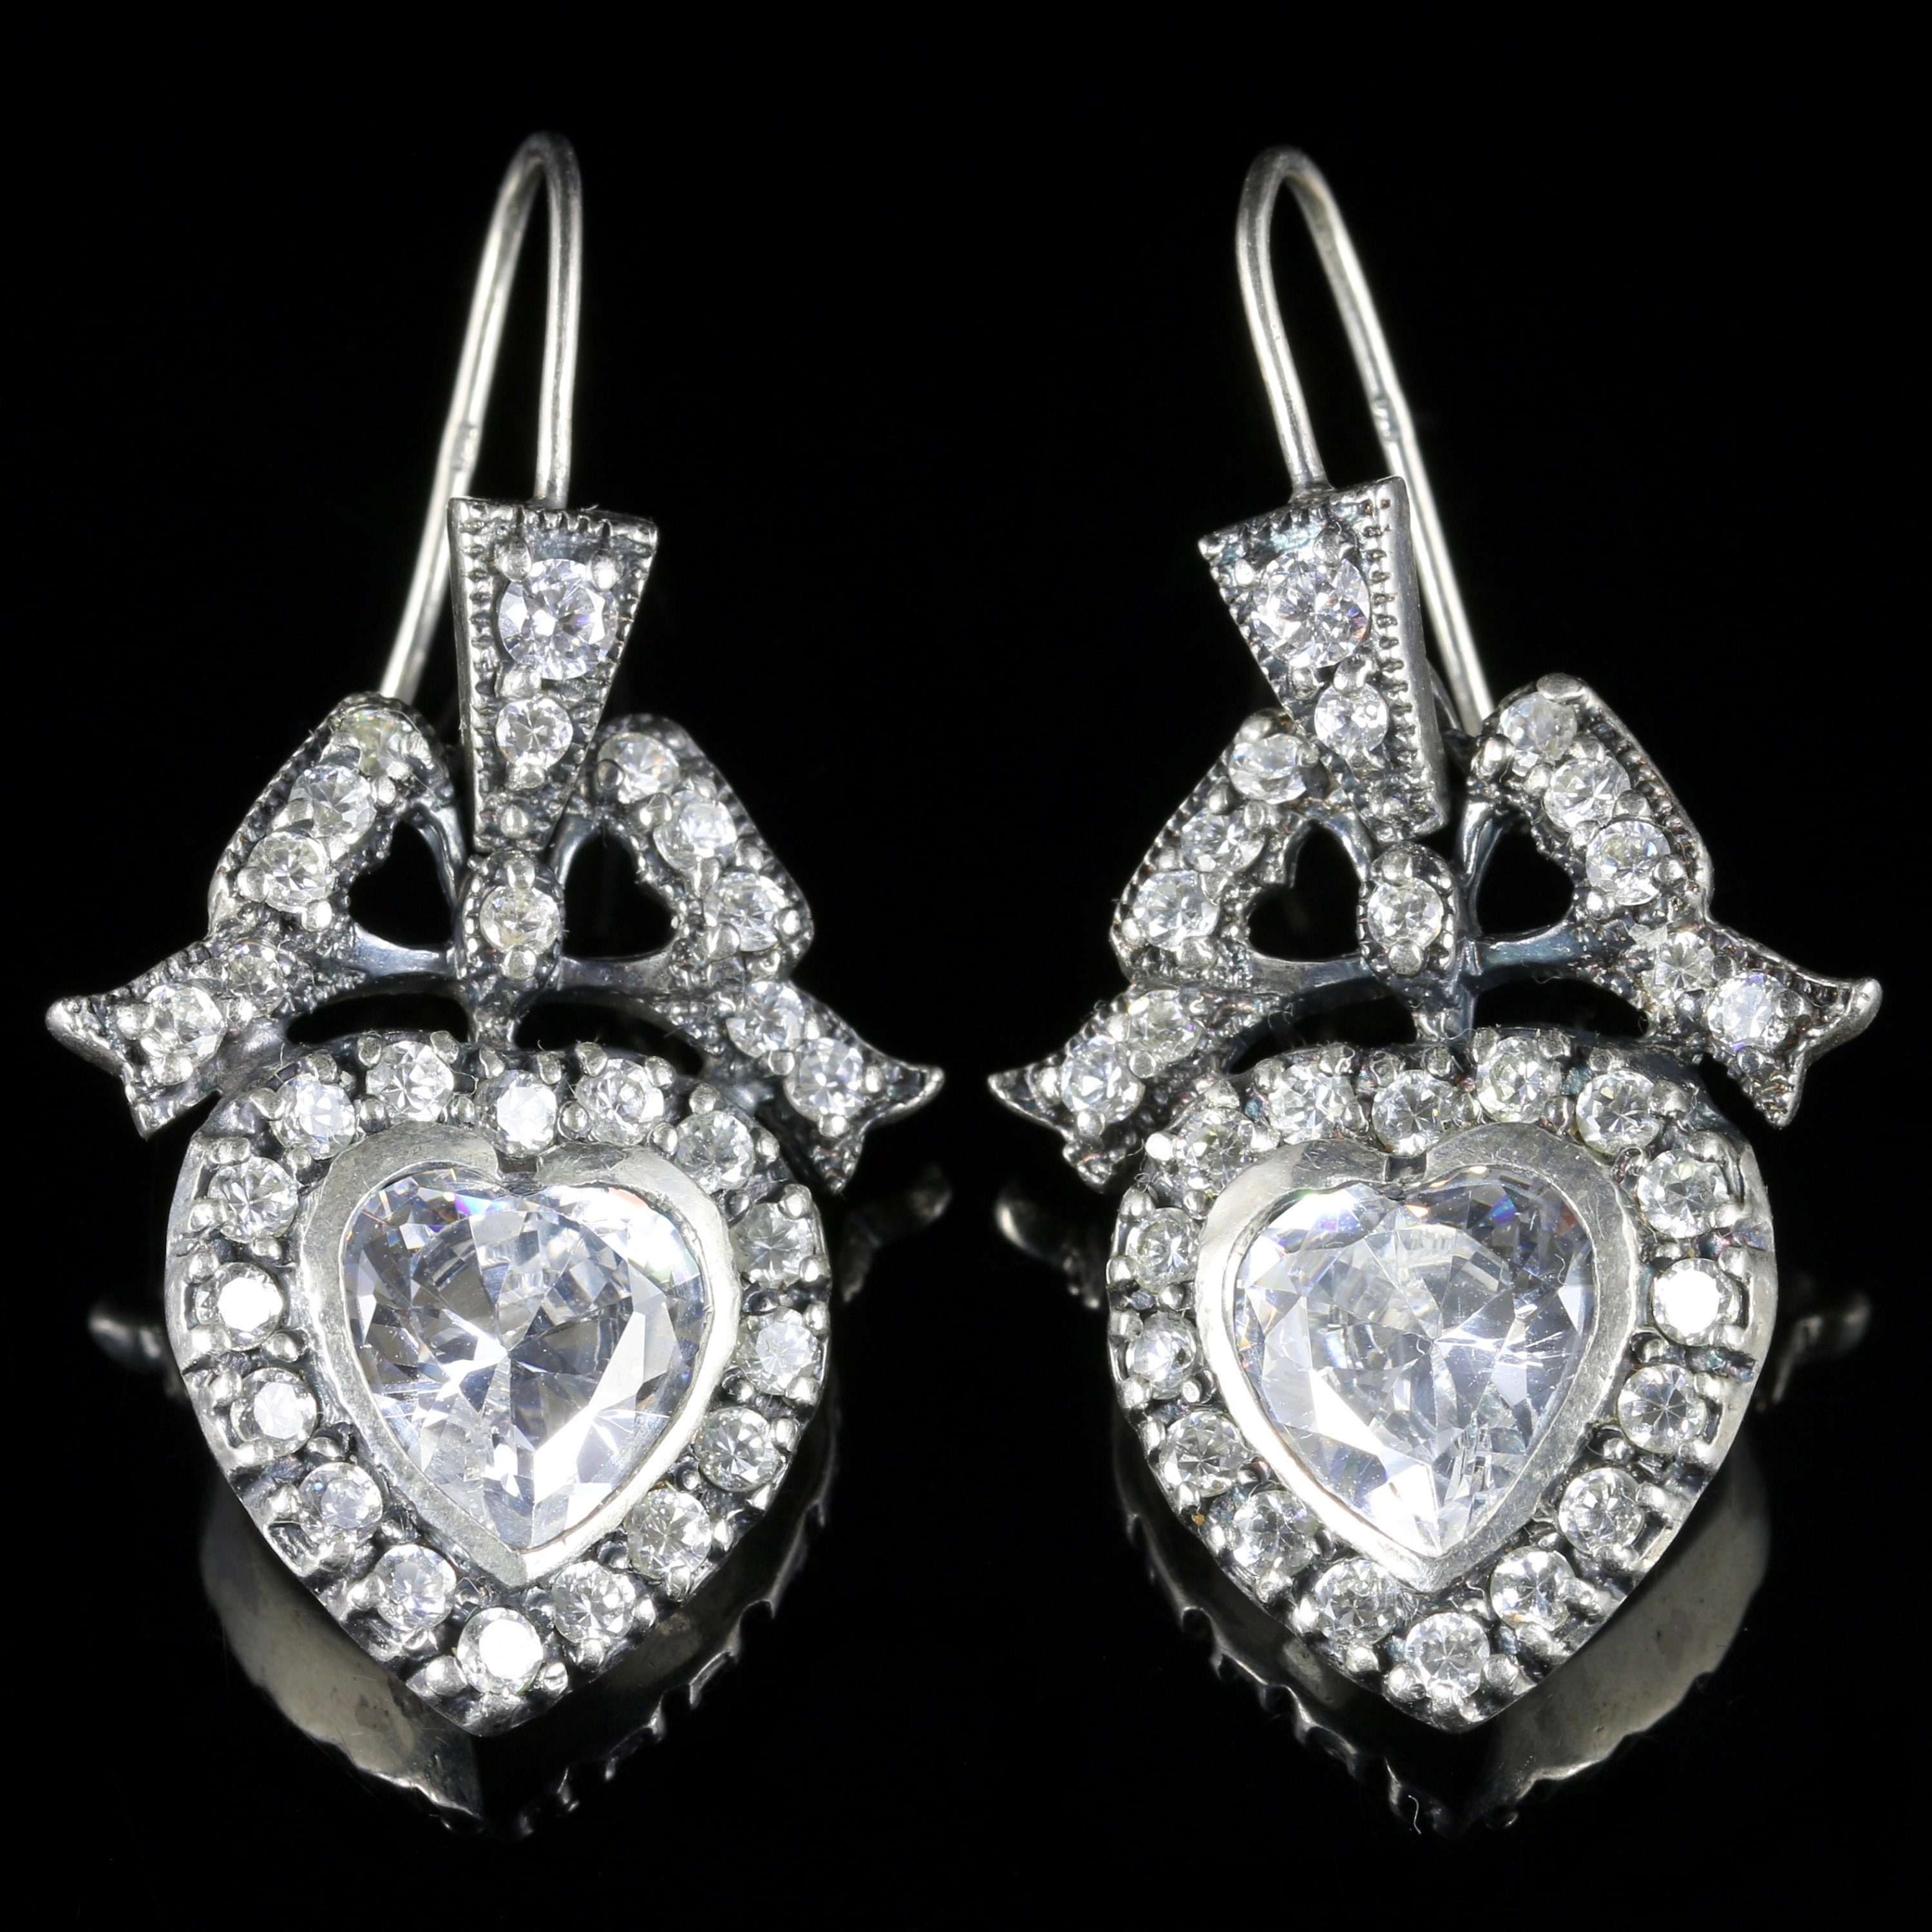 Edwardian Style Cz Heart Earrings Sterling Silver